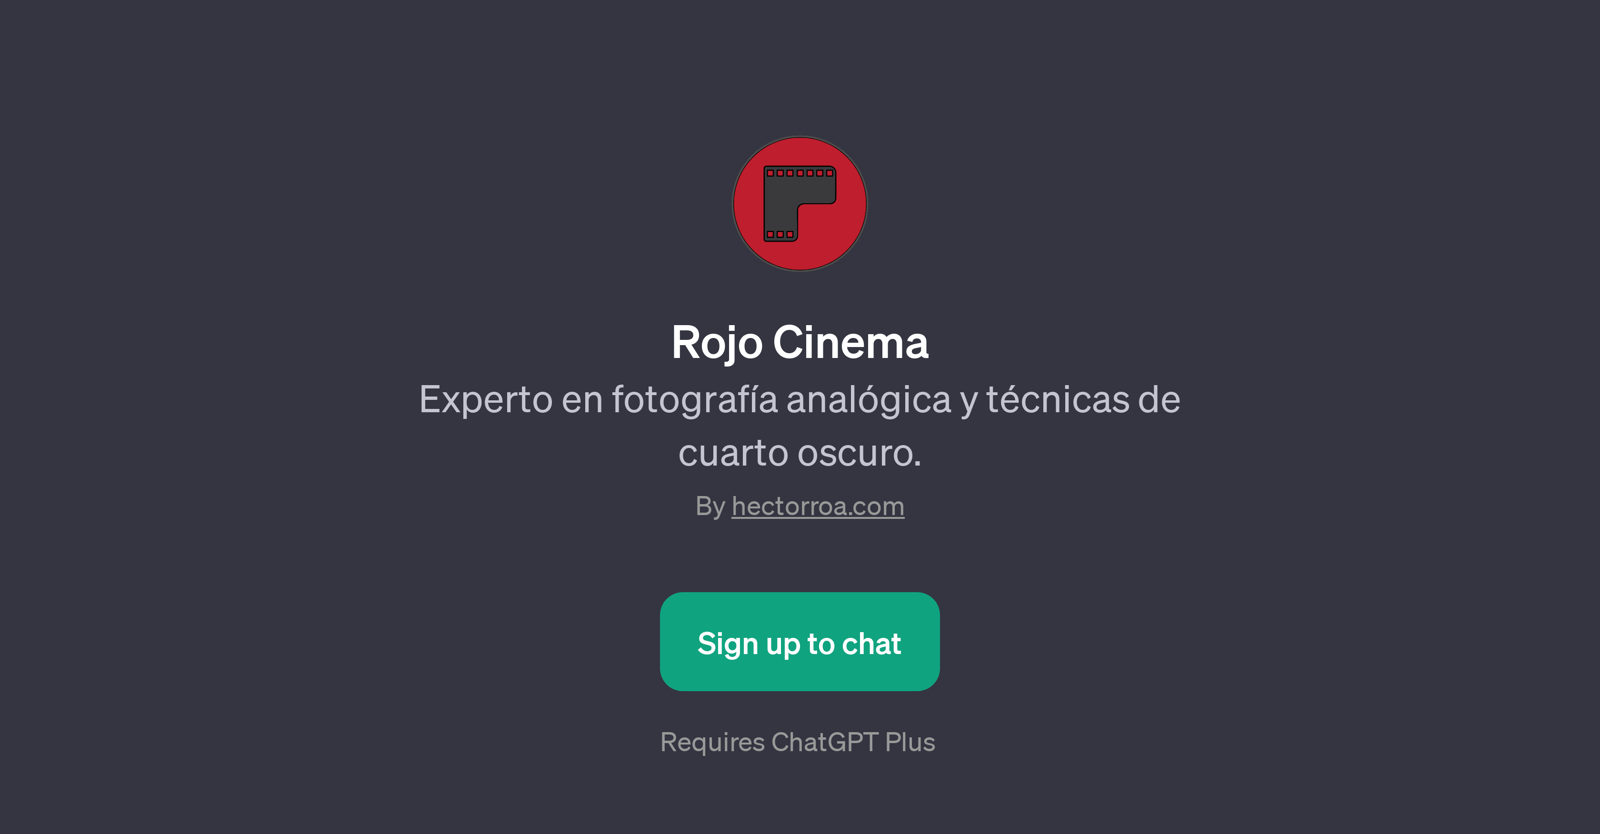 Rojo Cinema website